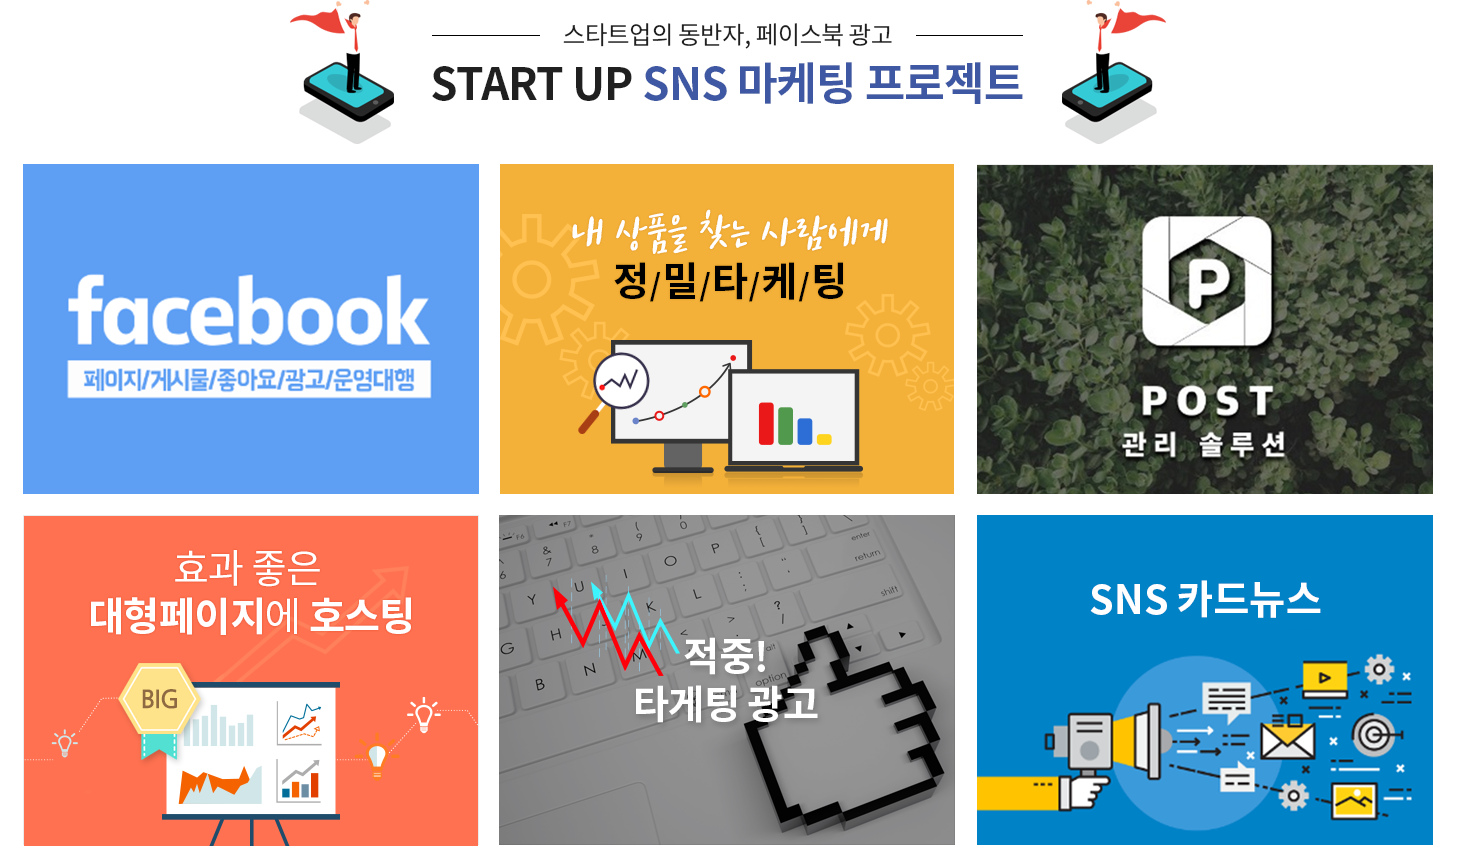 스타트업의 동반자, 페이스북 광고 / START UP SNS 마케팅 프로젝트 (sns 리스트 이미지)